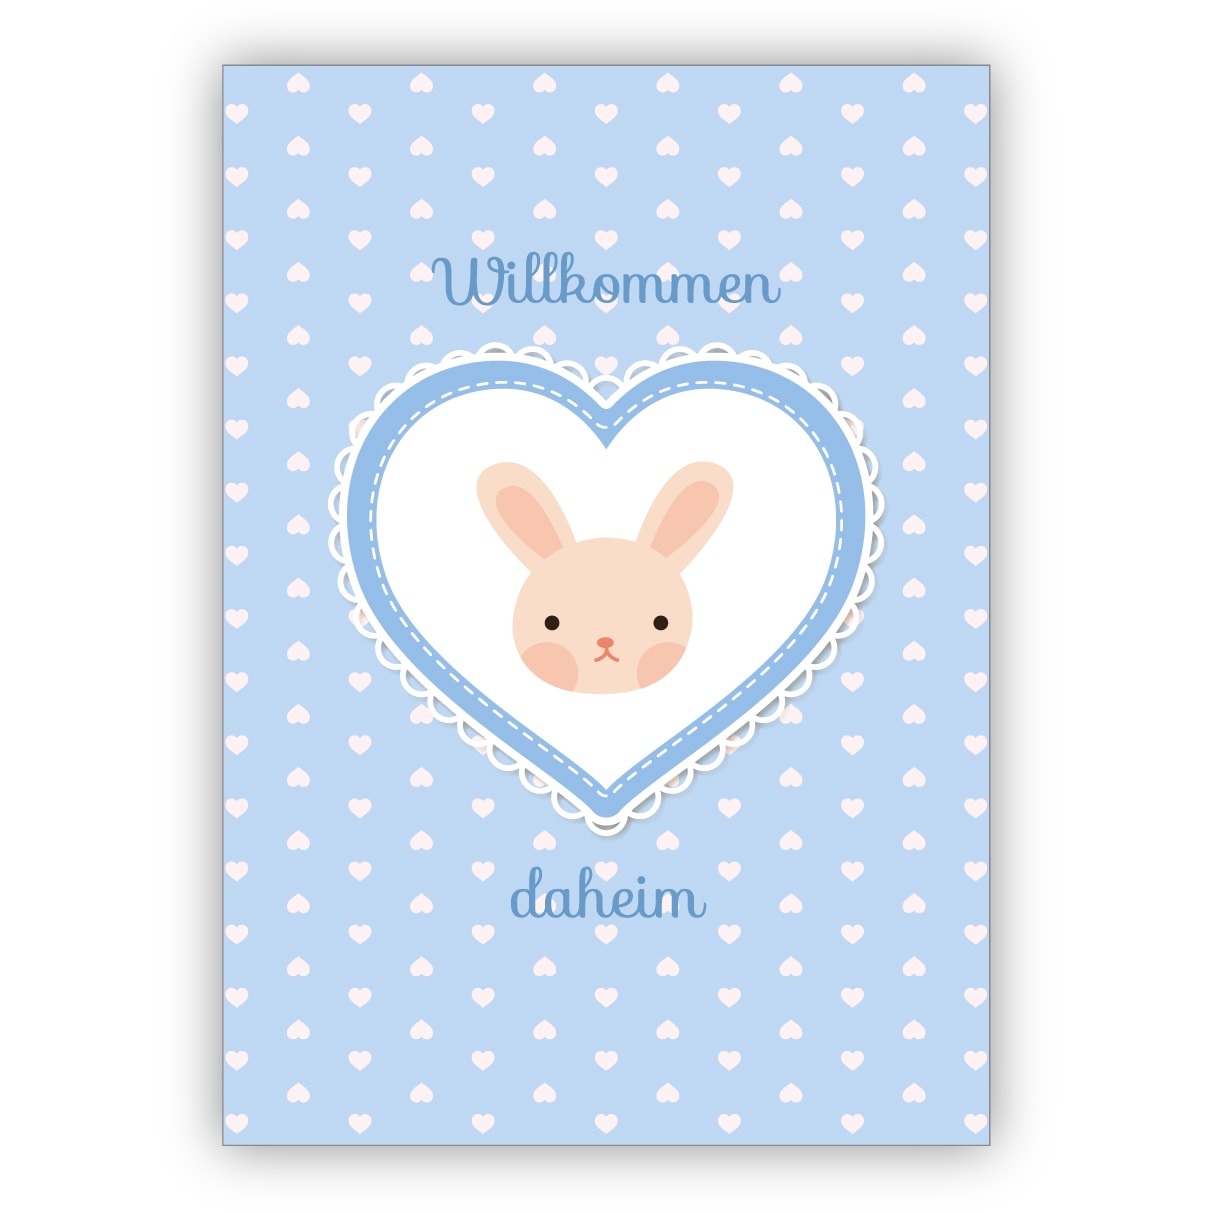 süße hellblaue Babykarte Glückwunschkarte mit Häschen im Herz für Baby Jungen zur Geburt: Willkommen daheim